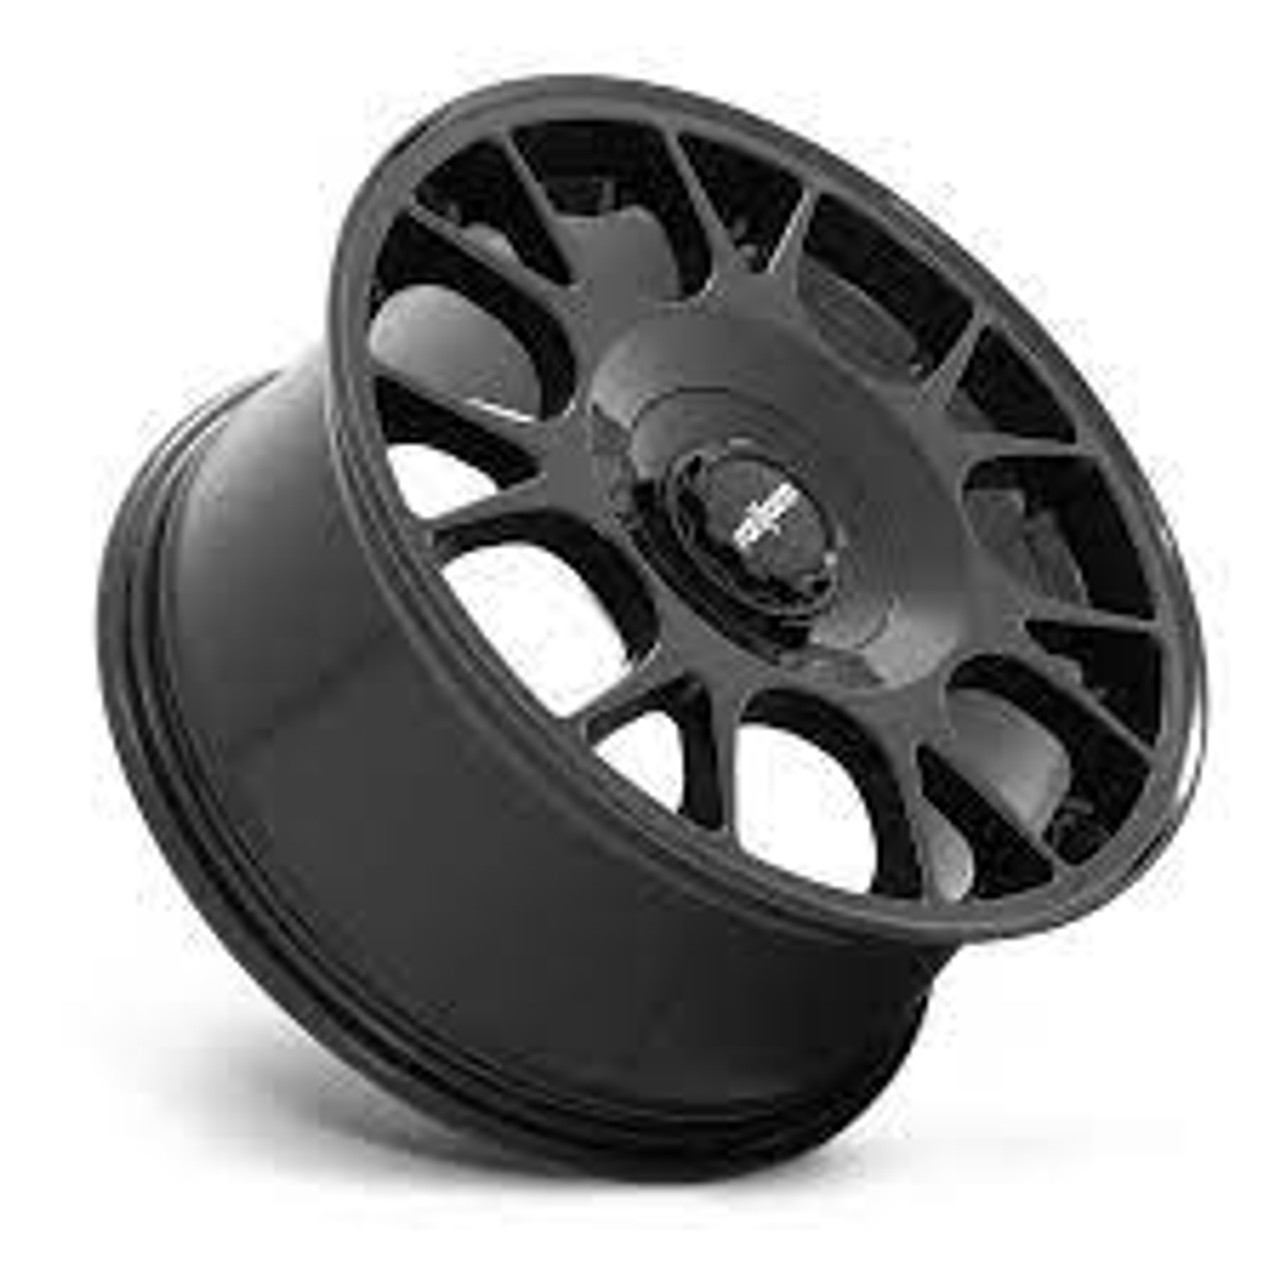 Rotiform R187 TUF-R Wheel 19x8.5 5x100/5x112 45 Offset - Gloss Black